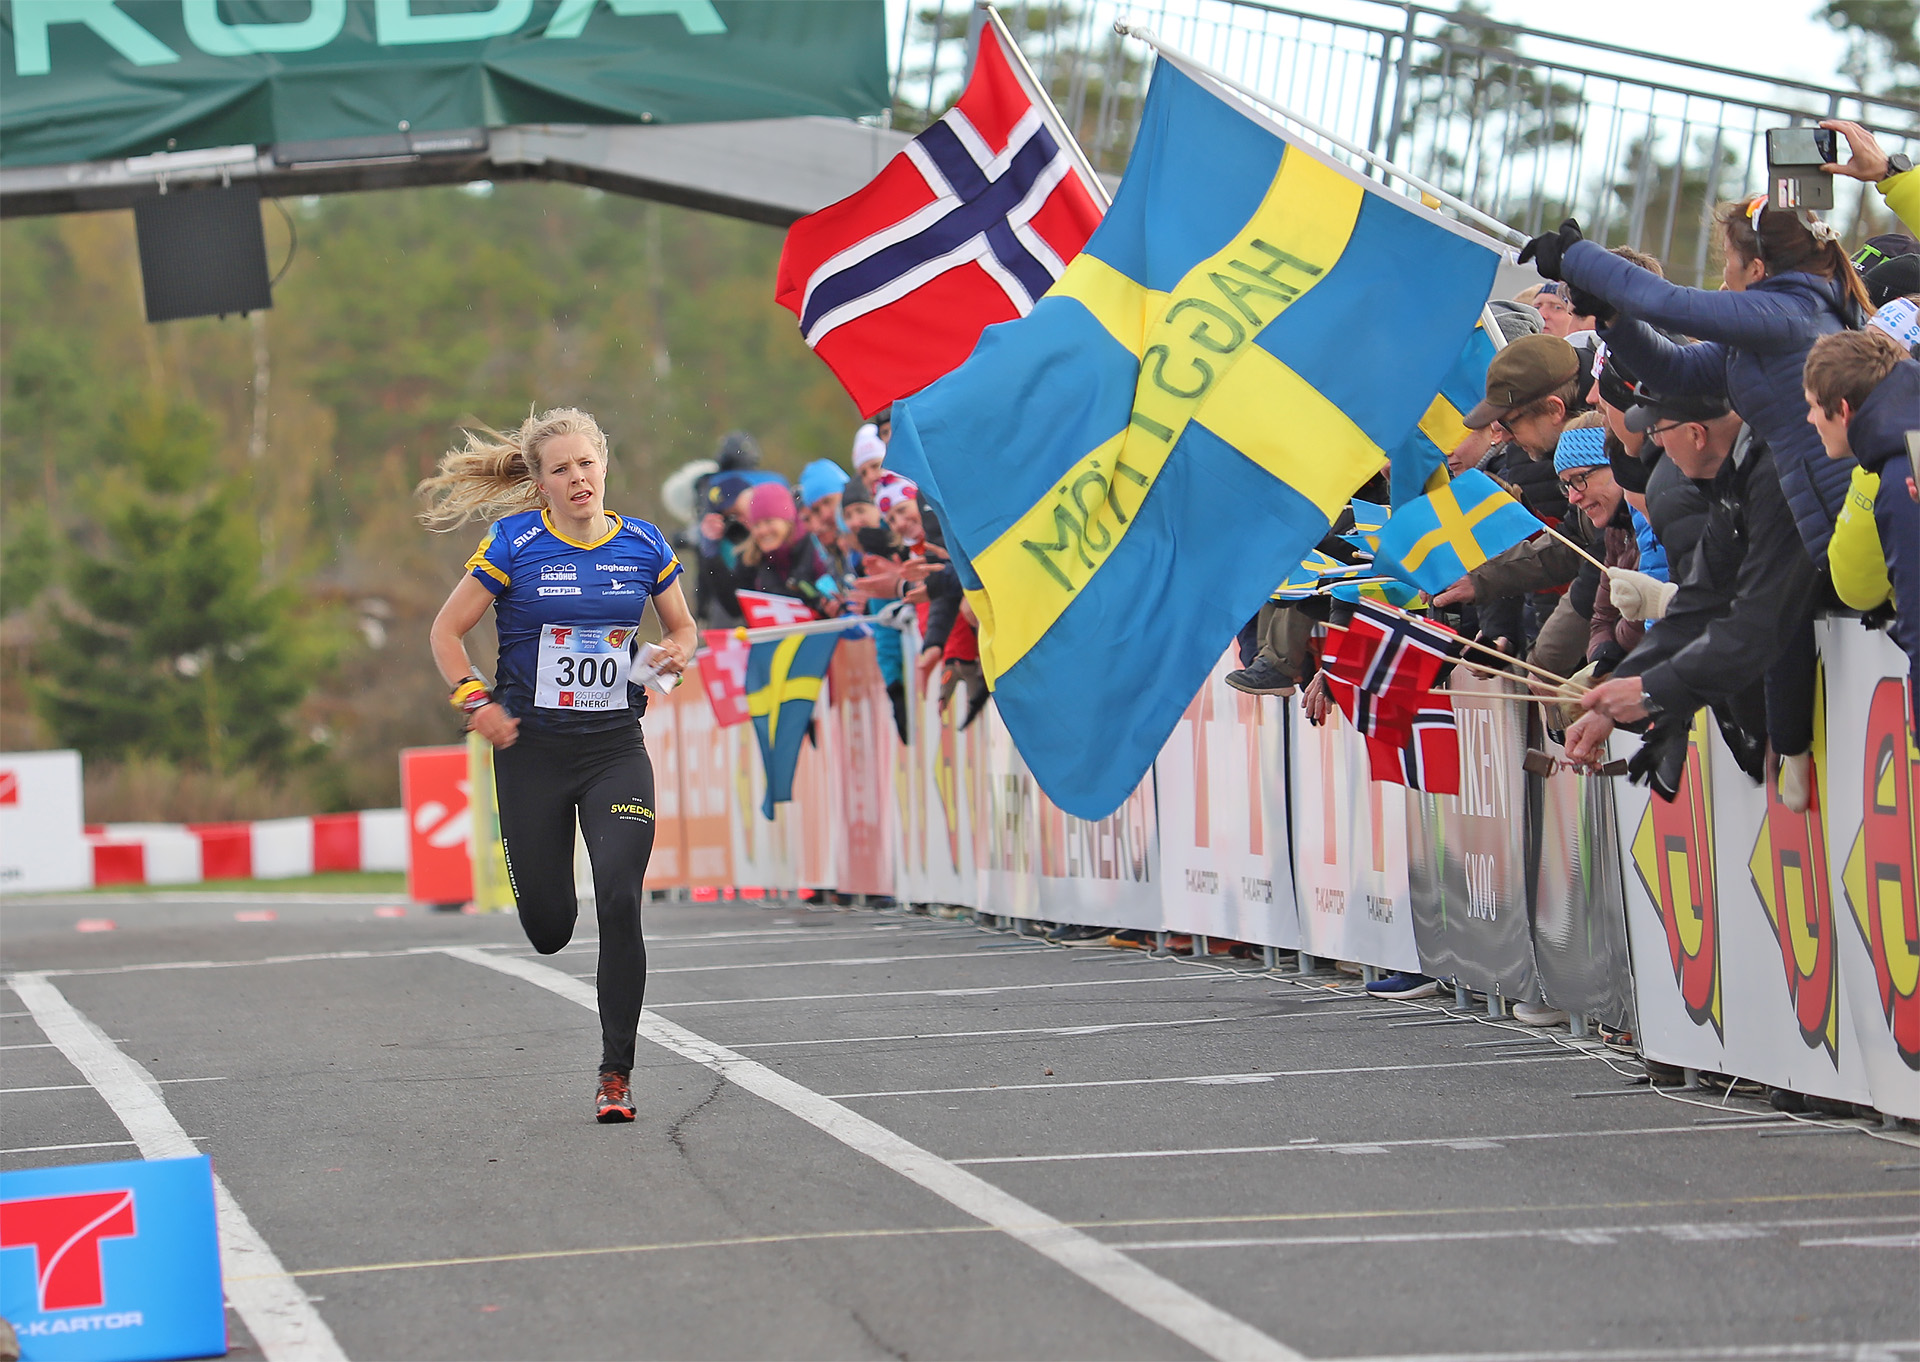 Sara Hagström spurtar mot seger på världscupens medeldistans i Östfold, Norge. 